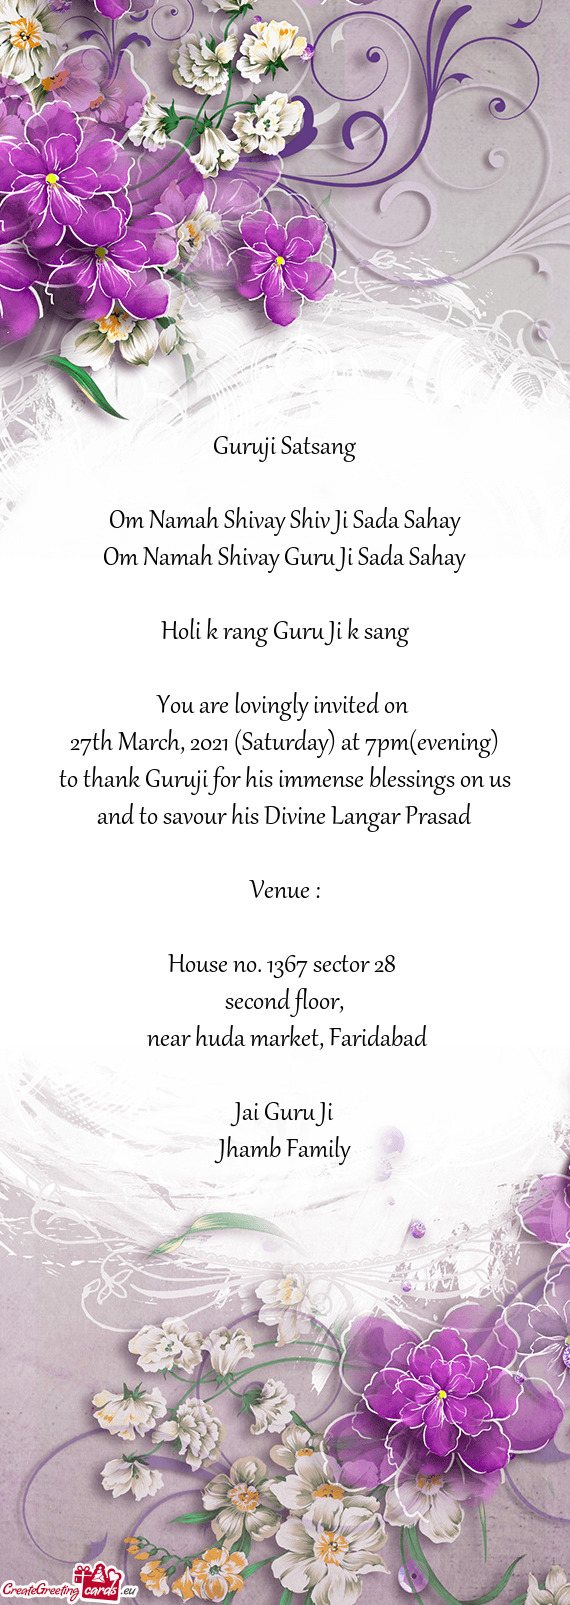 Om Namah Shivay Guru Ji Sada Sahay